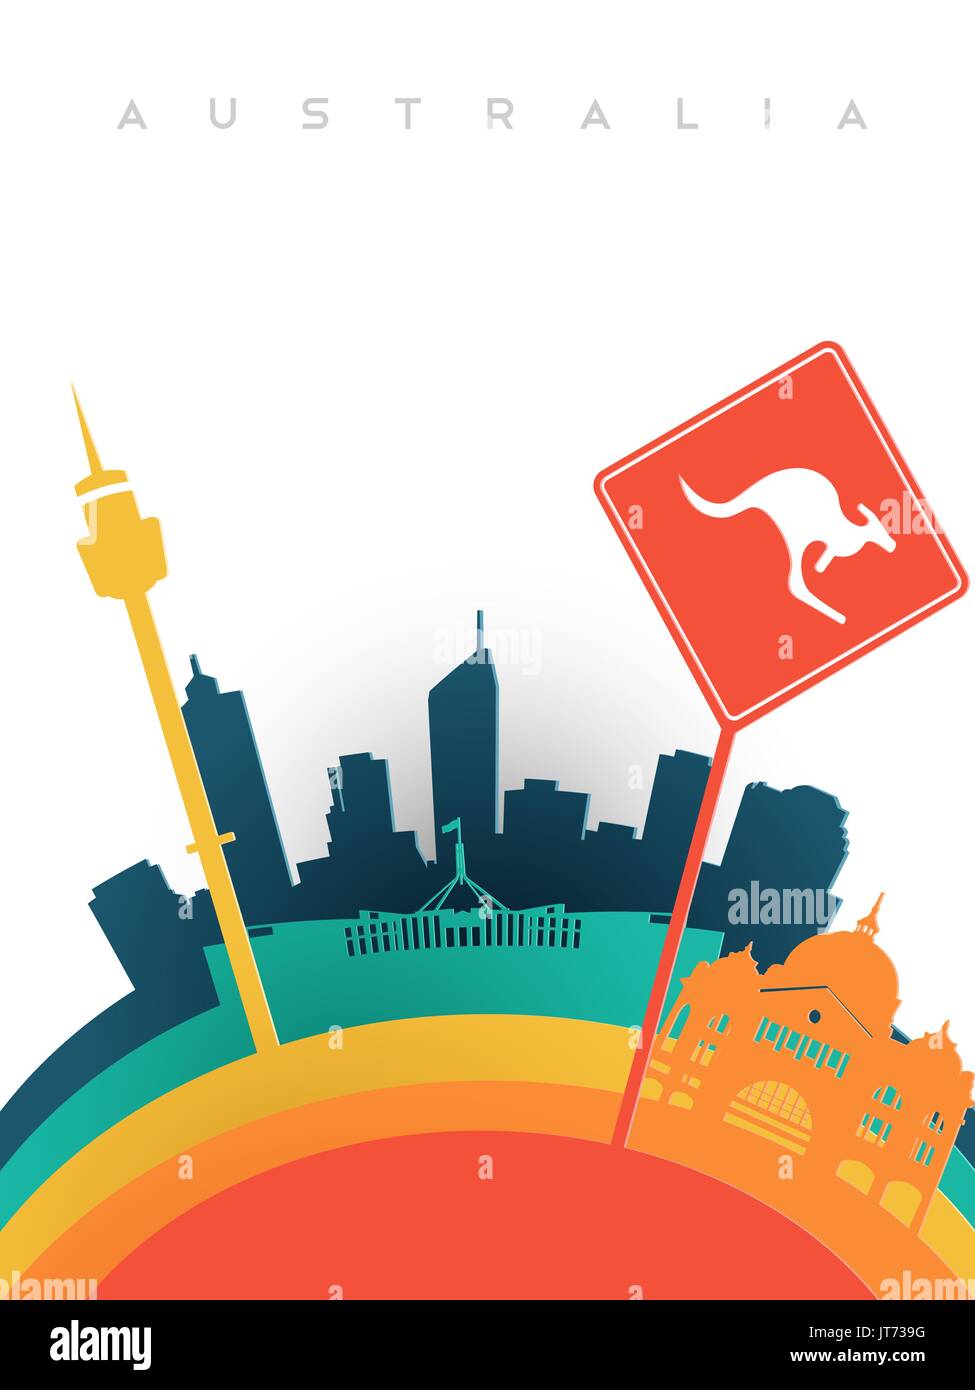 Viaggi Australia illustrazione in 3d carta tagliata in stile australiano, punti di riferimento mondiale. Include la Torre di Sydney, canguro segno, Melbourne stazione ferroviaria. EPS1 Illustrazione Vettoriale